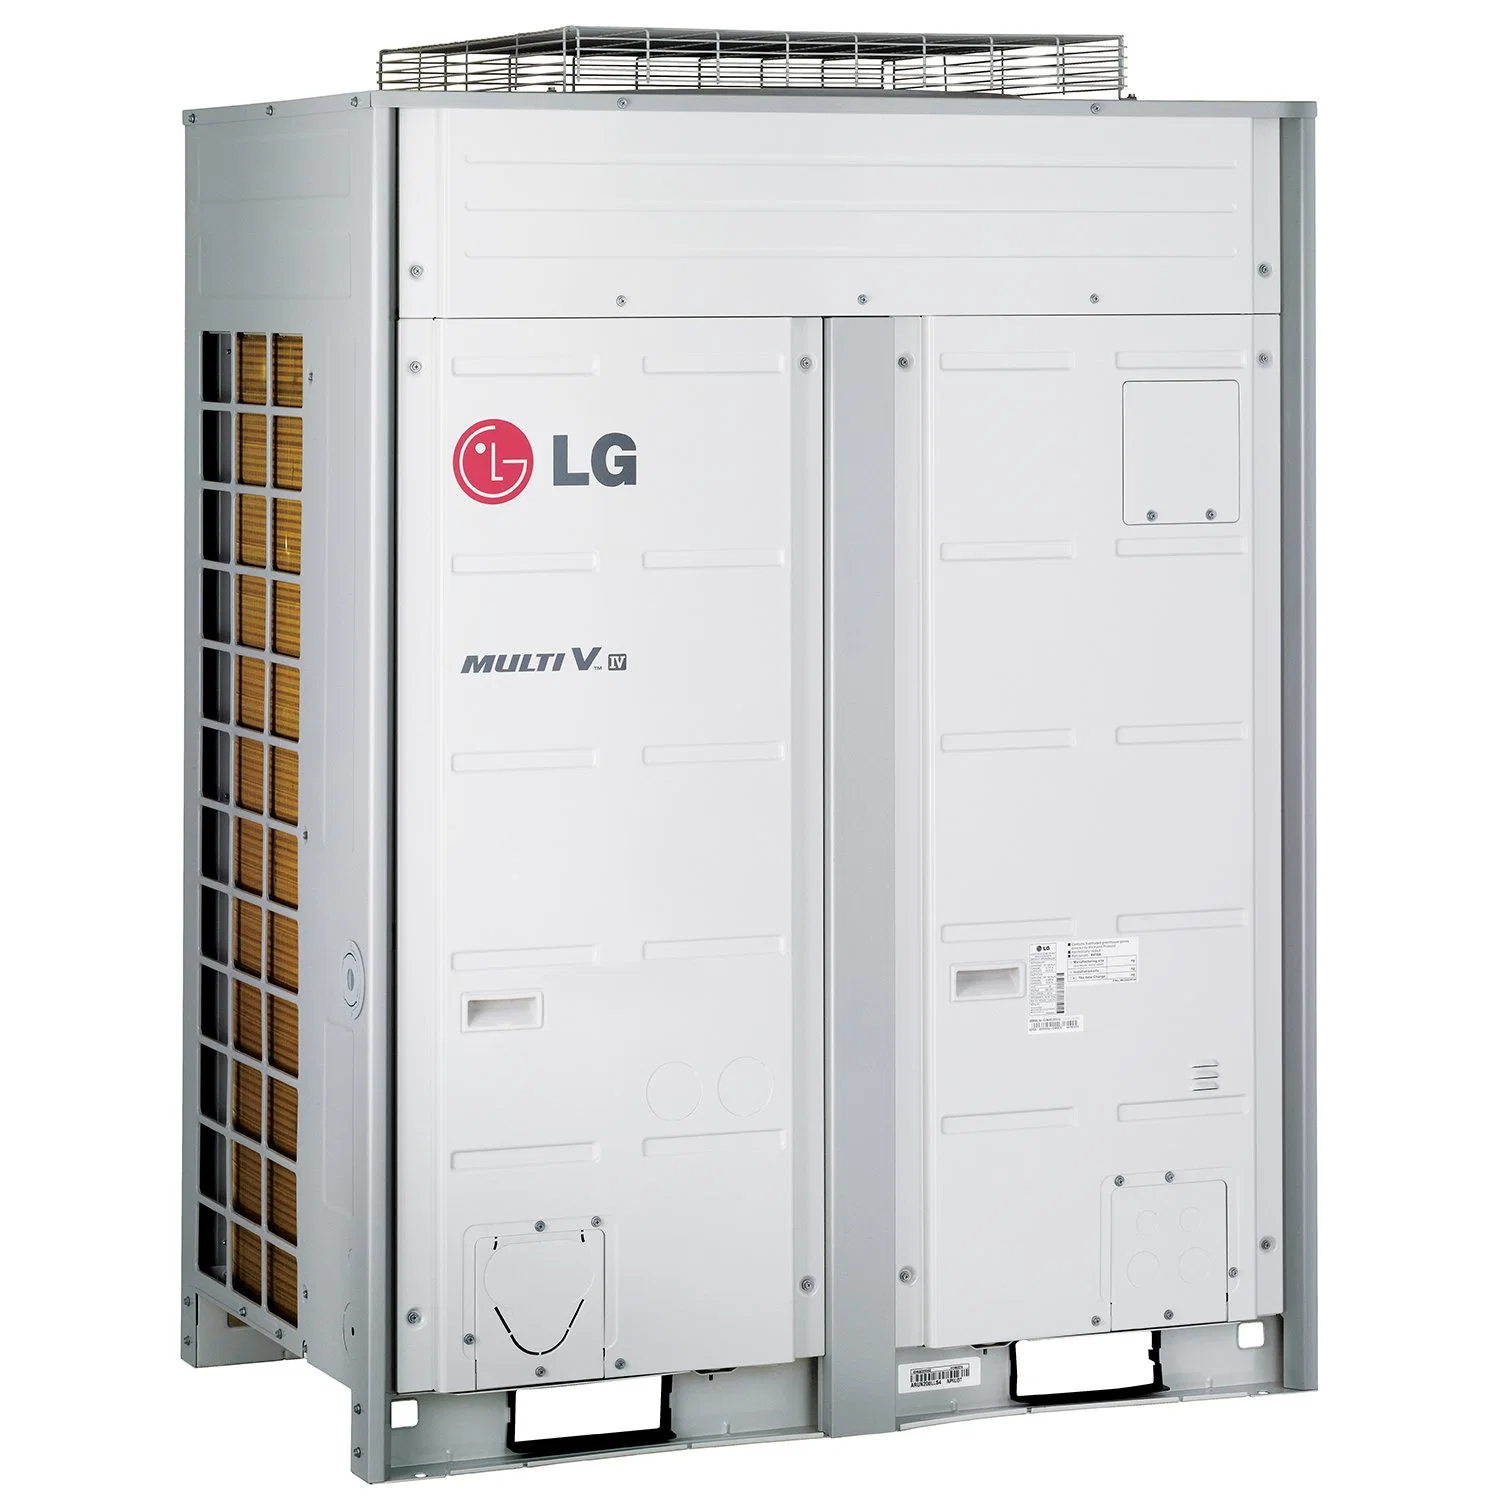 LG aire acondicionadores de aire Industrial Coller El sistema de refrigeración